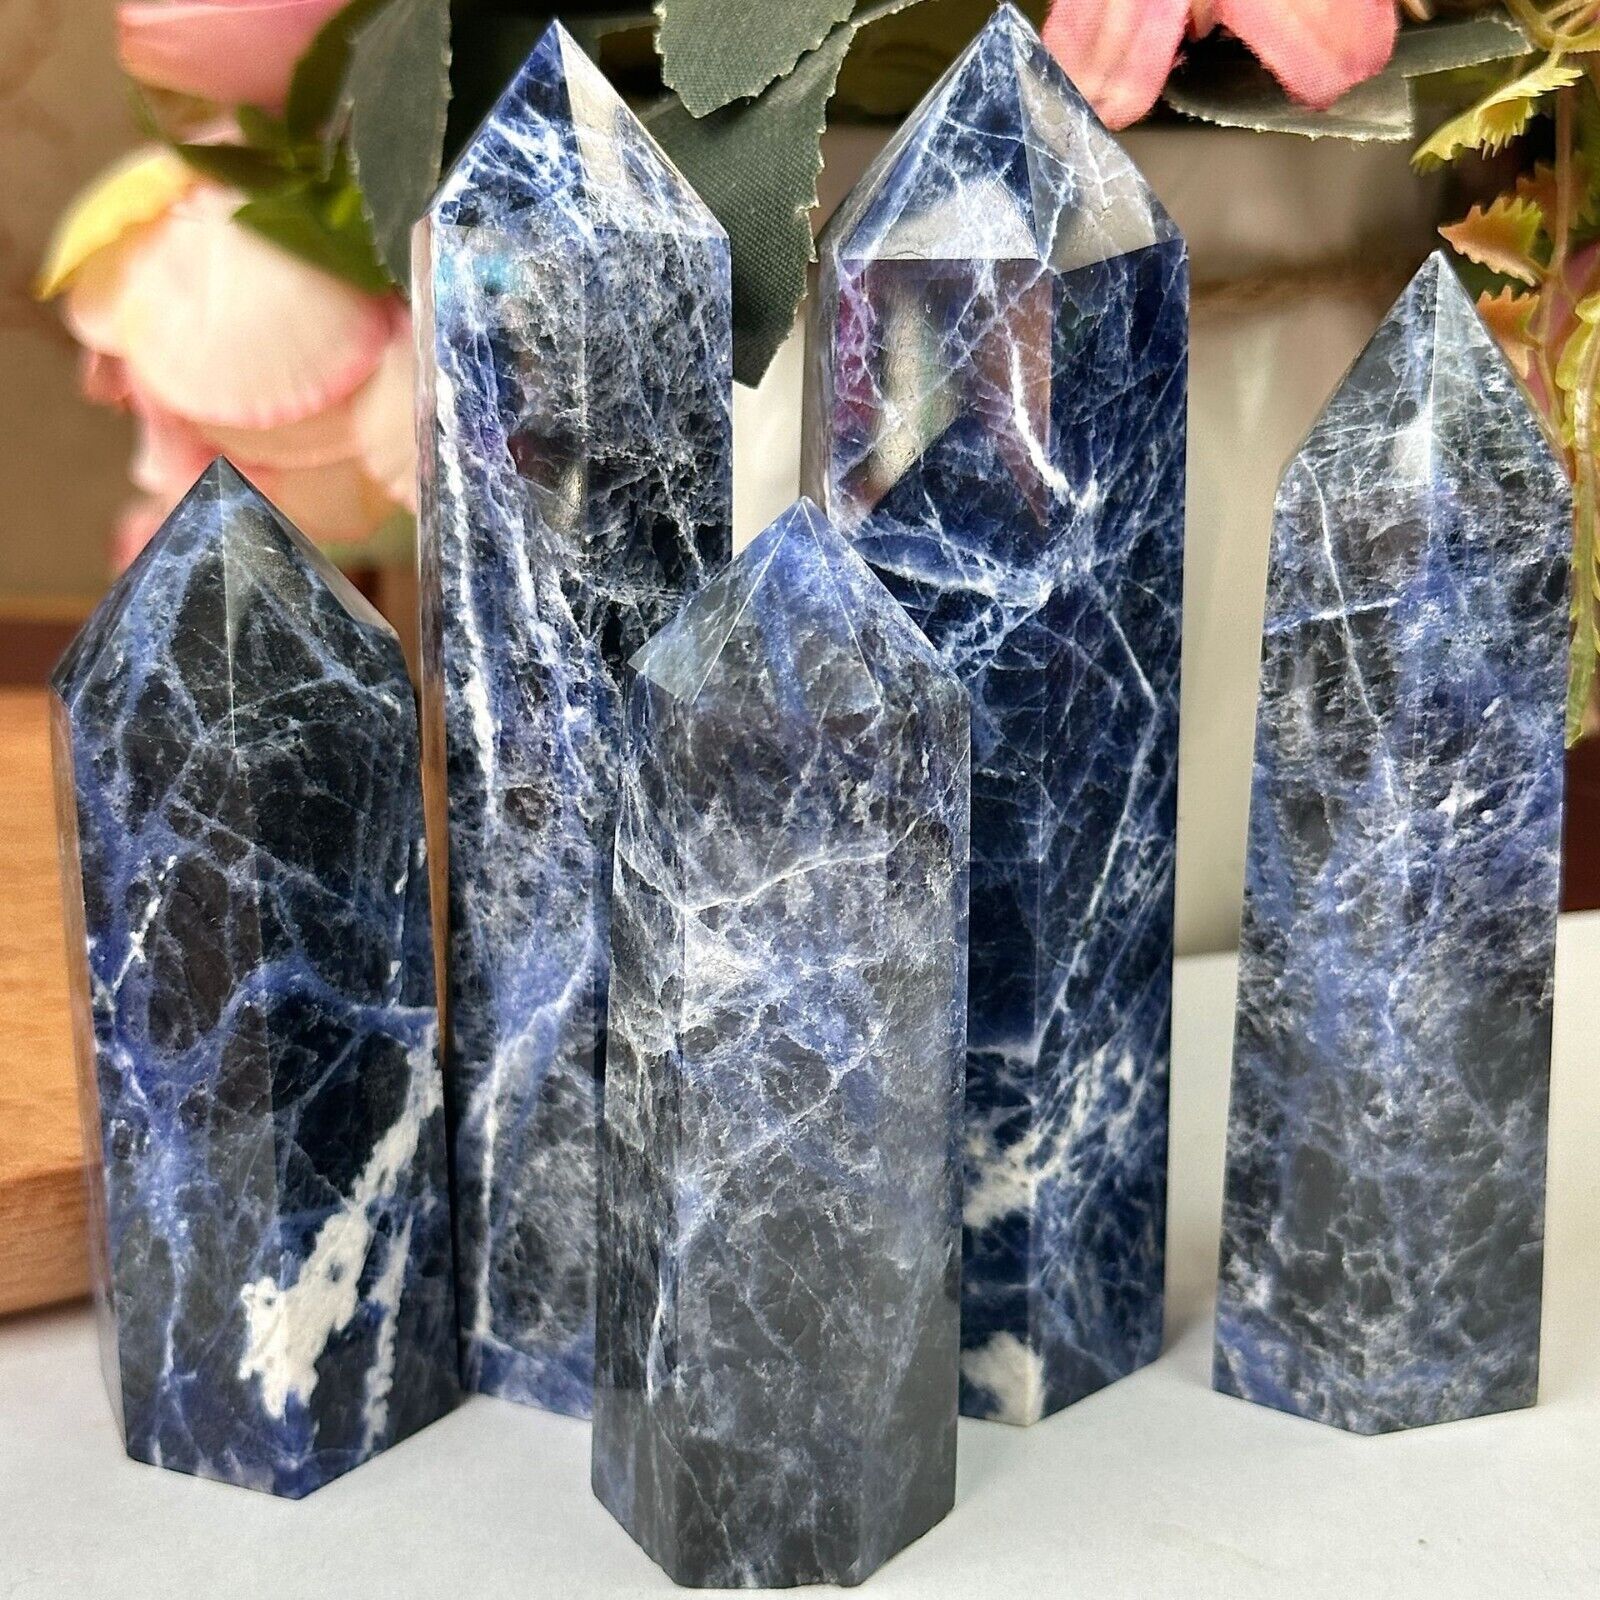 Blue Sodalite Crystal Polished Tower Point Meditation Healing Obelisk Decoration